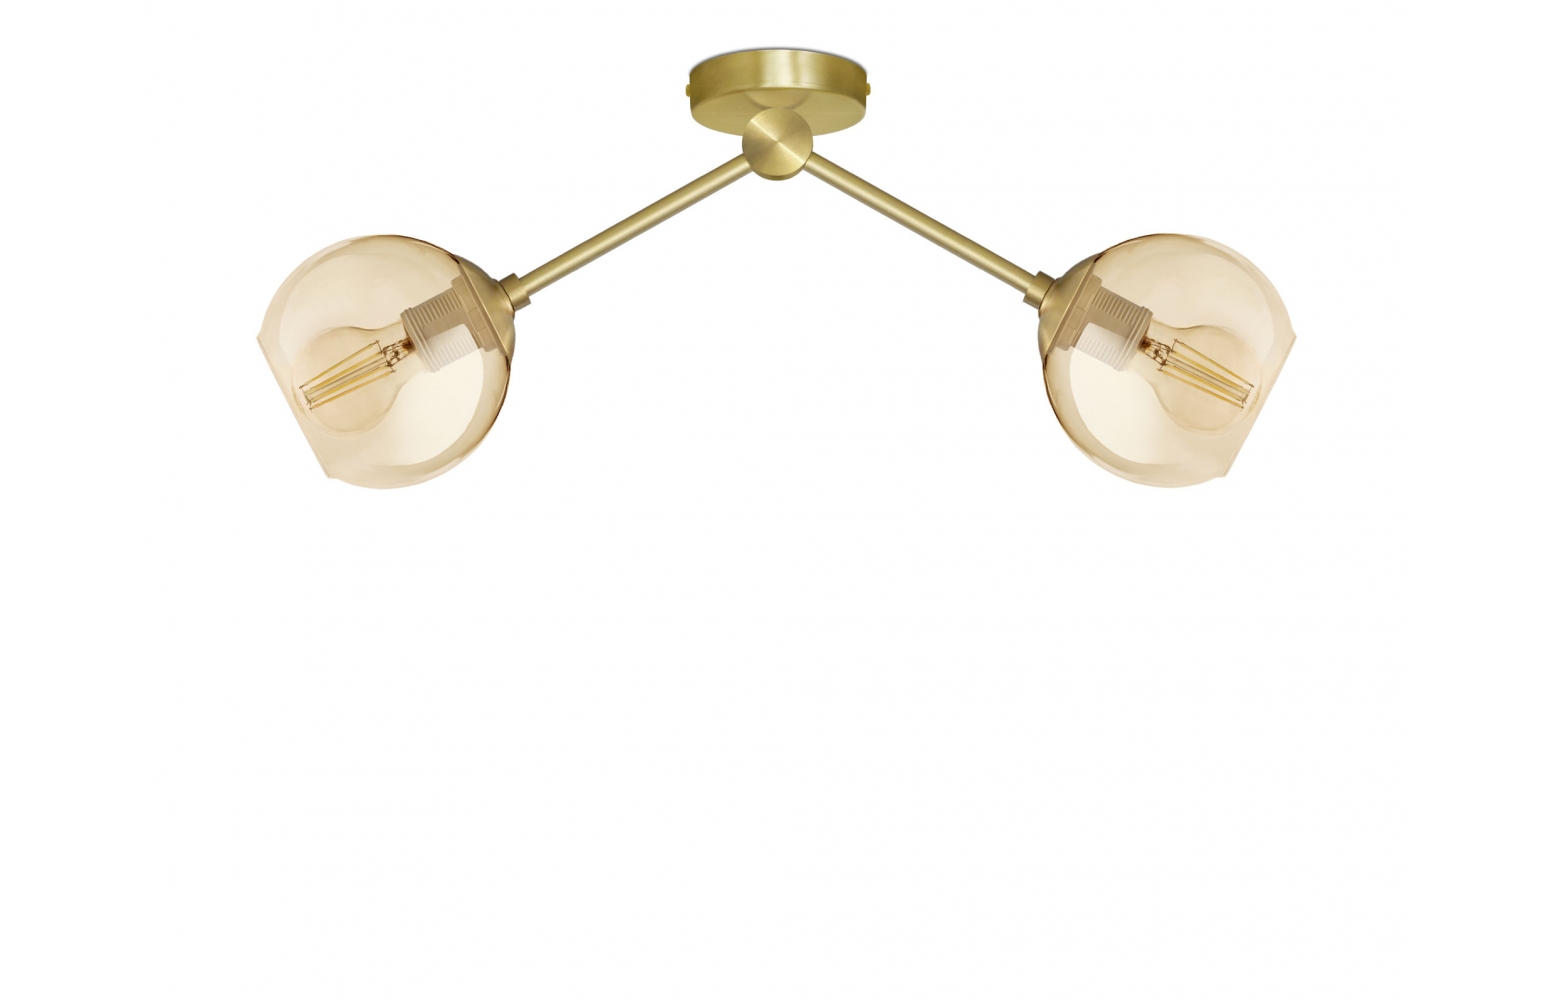 Przysufitowa złota lampa mosiężna GB-S2K